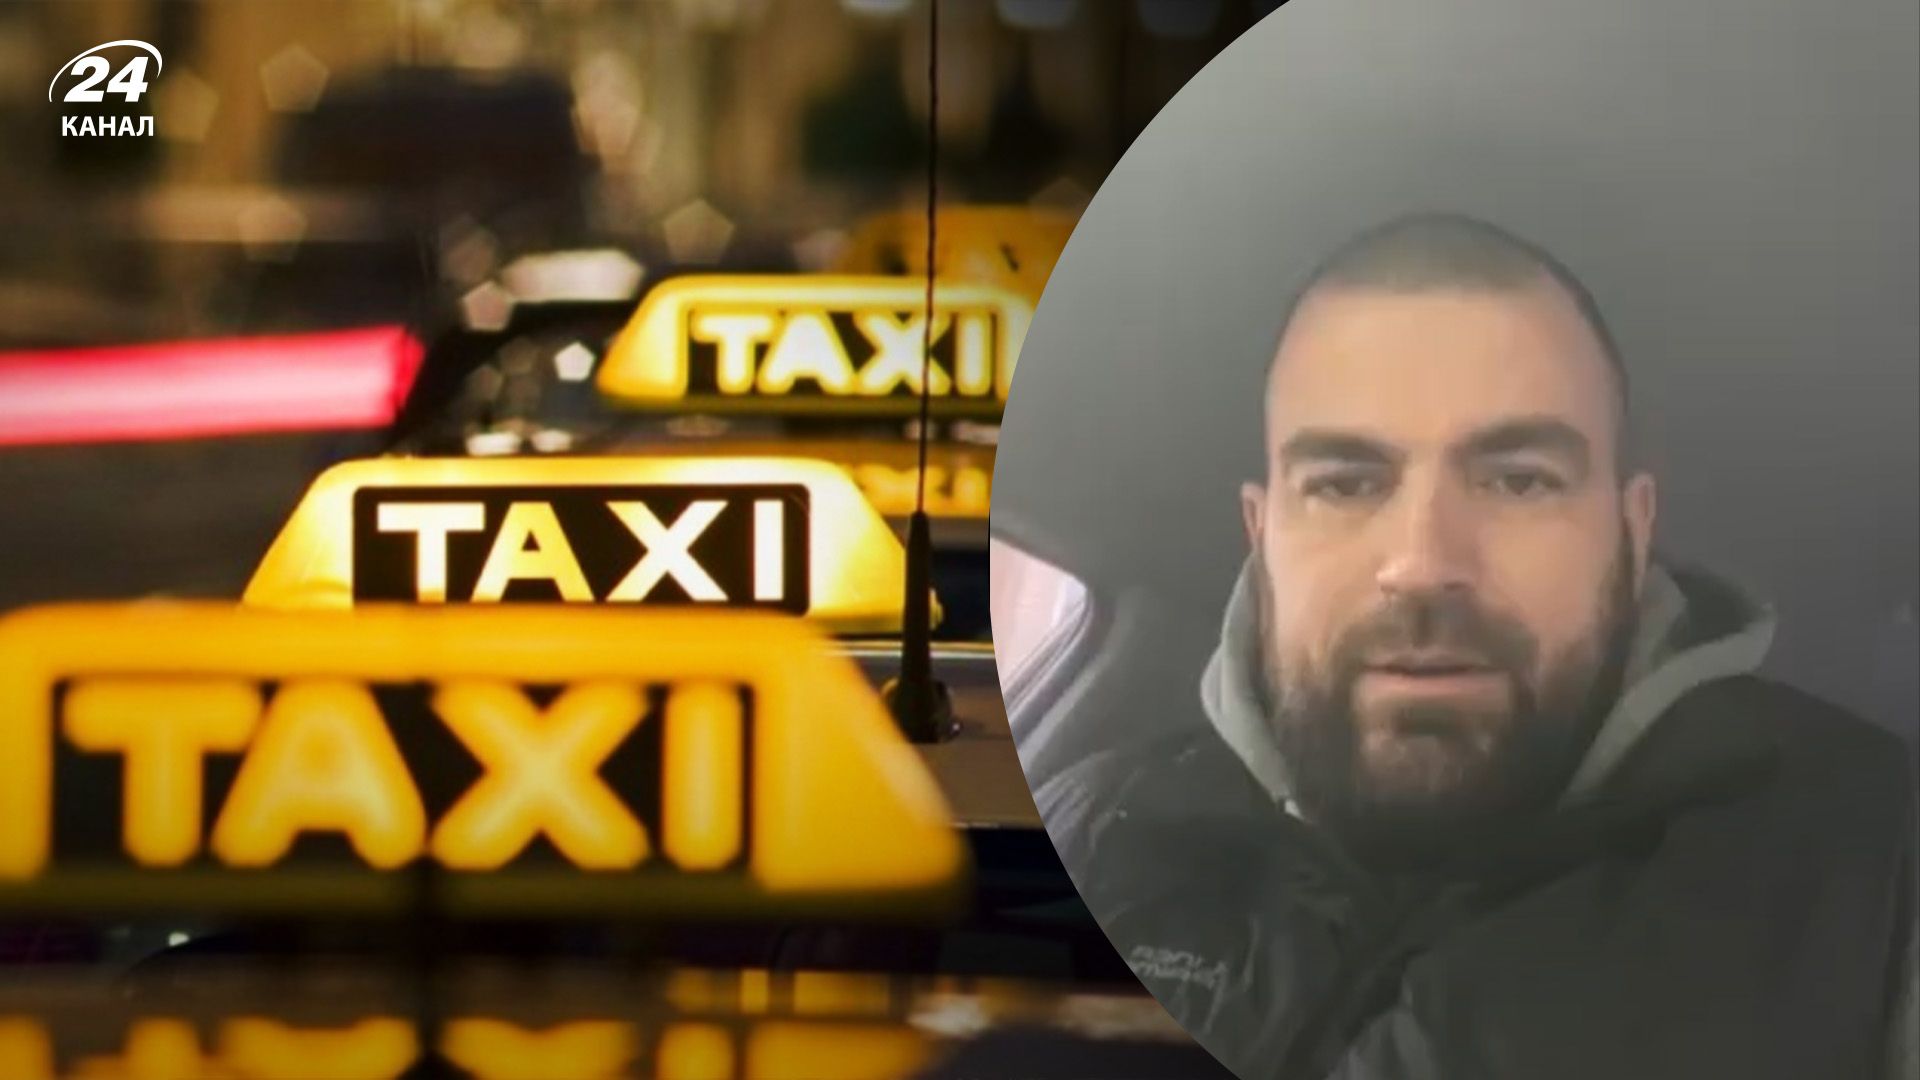 Скандал из-за языка в Киеве - таксист записал видео на ломаном украинском, но не извинился - 24 Канал